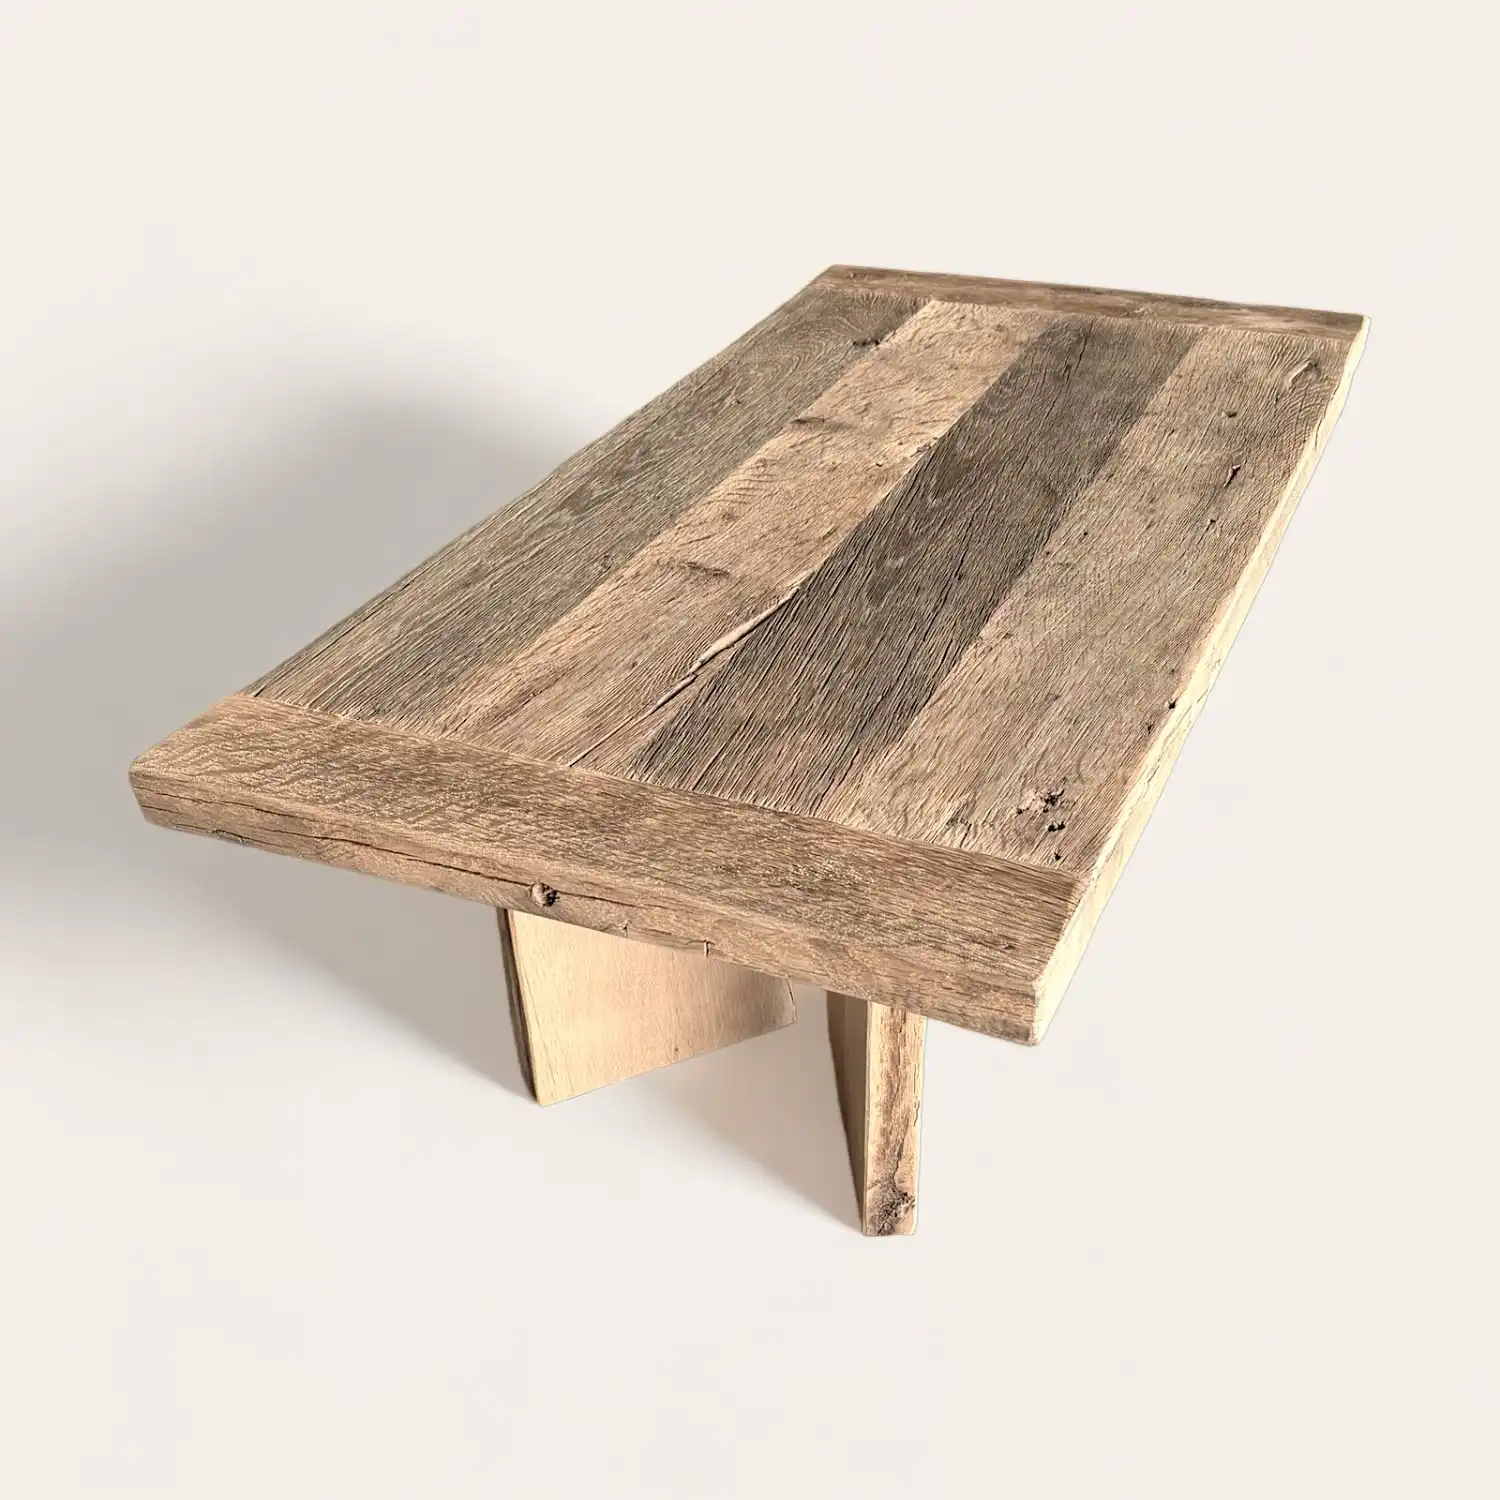  Une table rustique en bois fabriquée à partir de bois récupéré. 